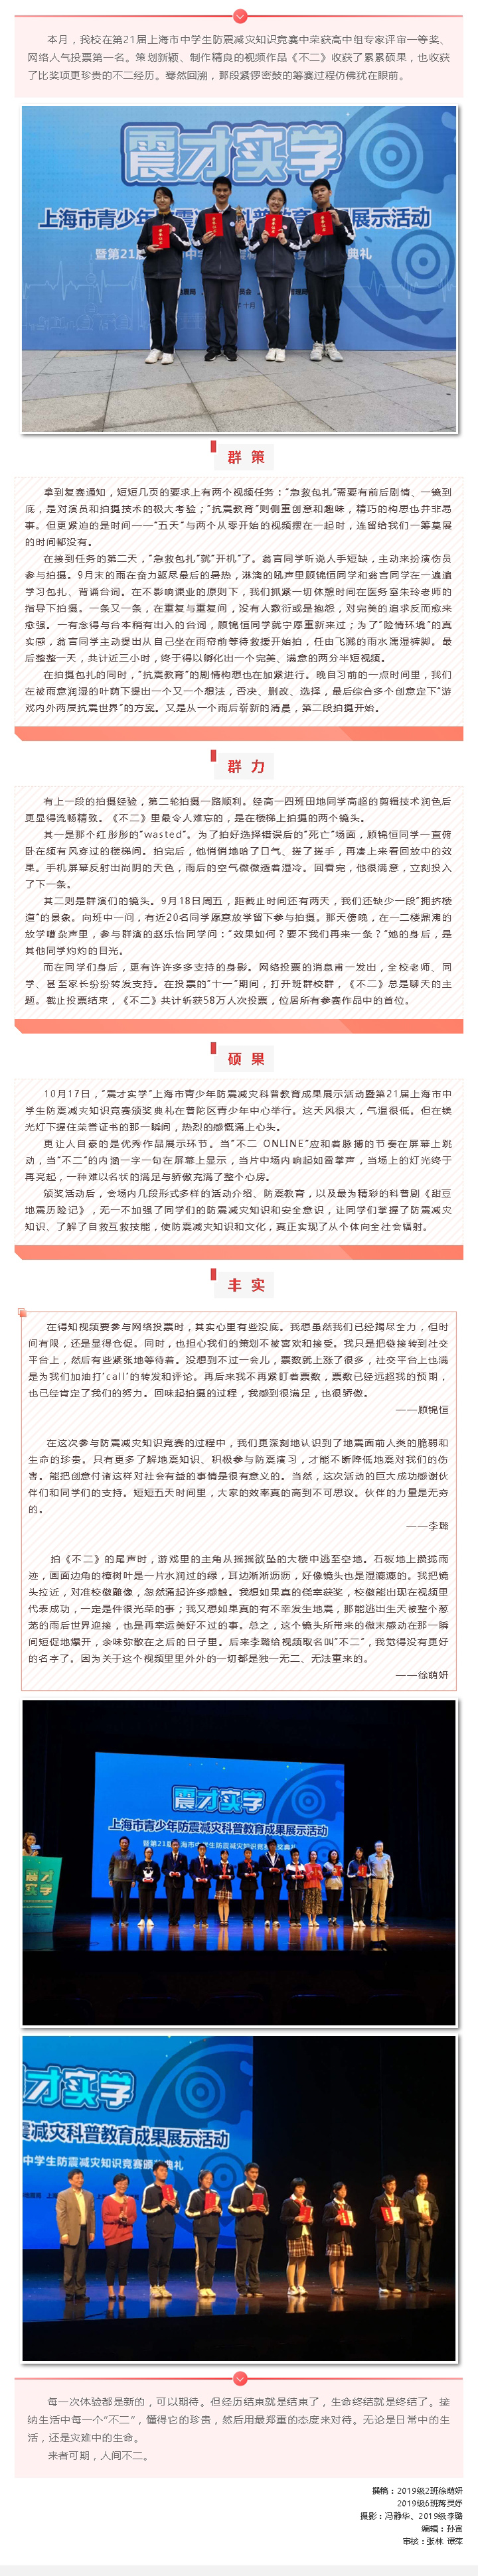 “来者可期，人间不二”——记我校荣获第21届上海市中学生防震减灾知识竞赛一等奖_20201028153428.jpg